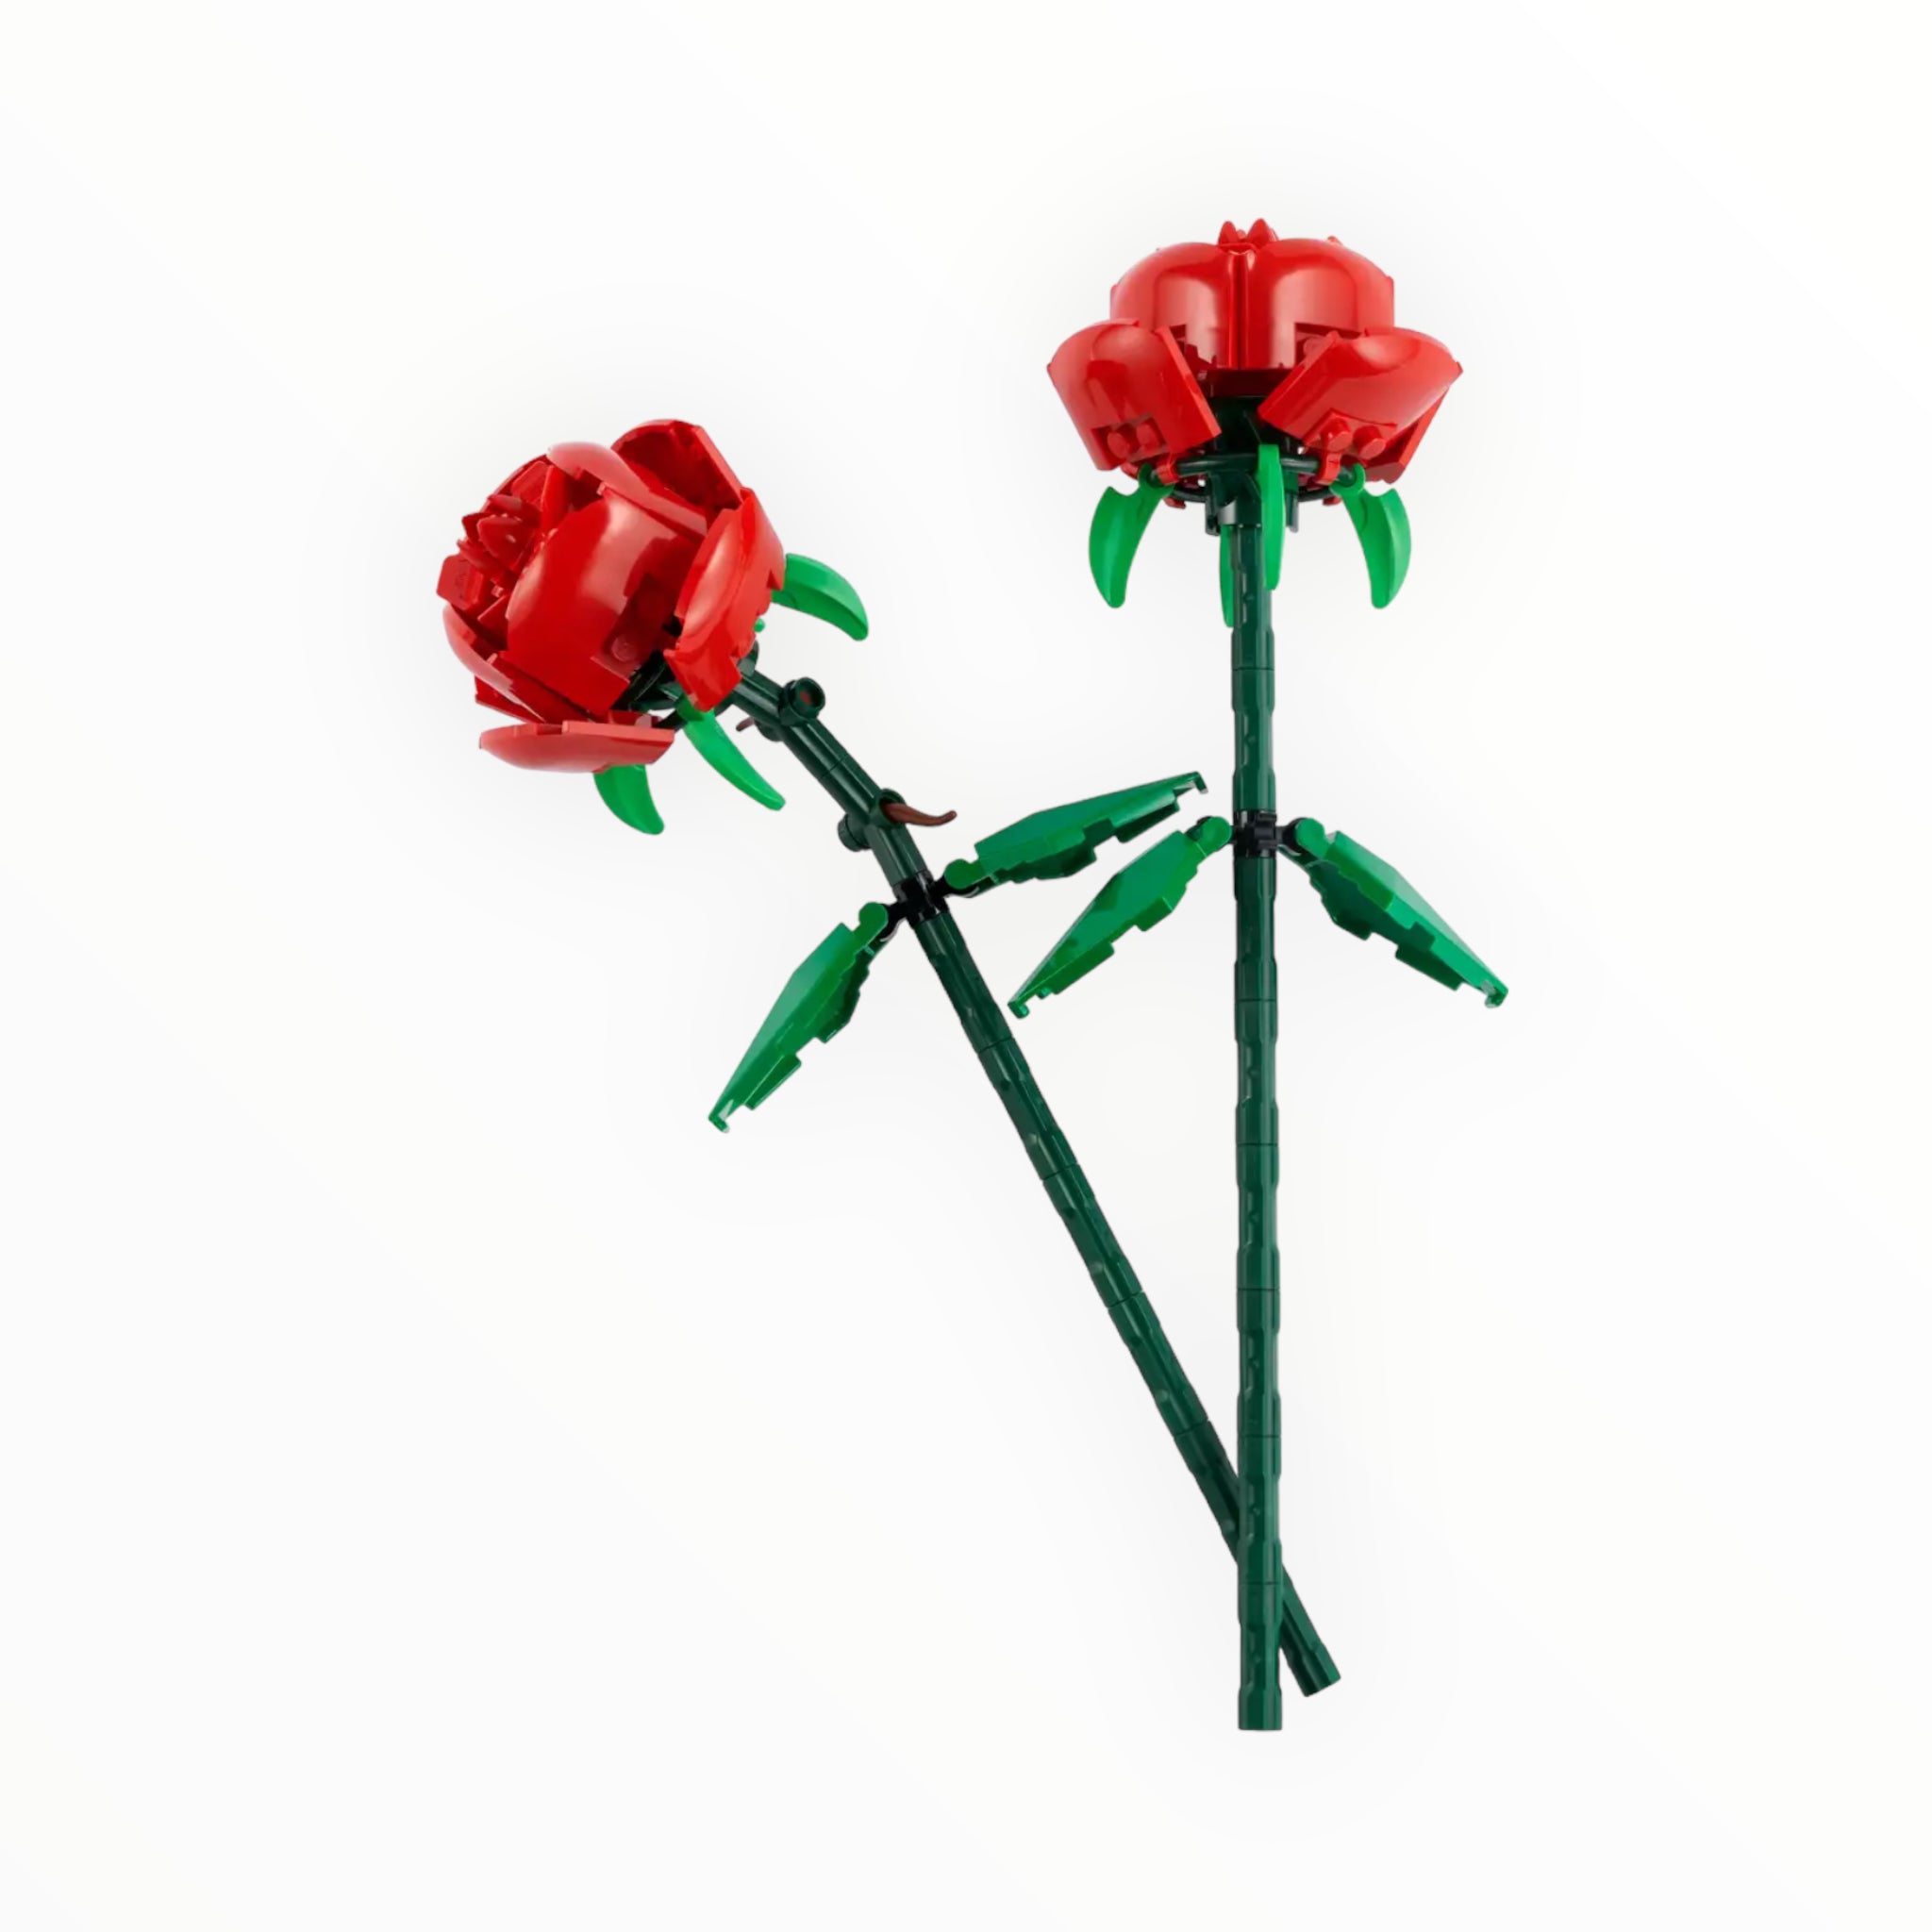 40460 LEGO Roses